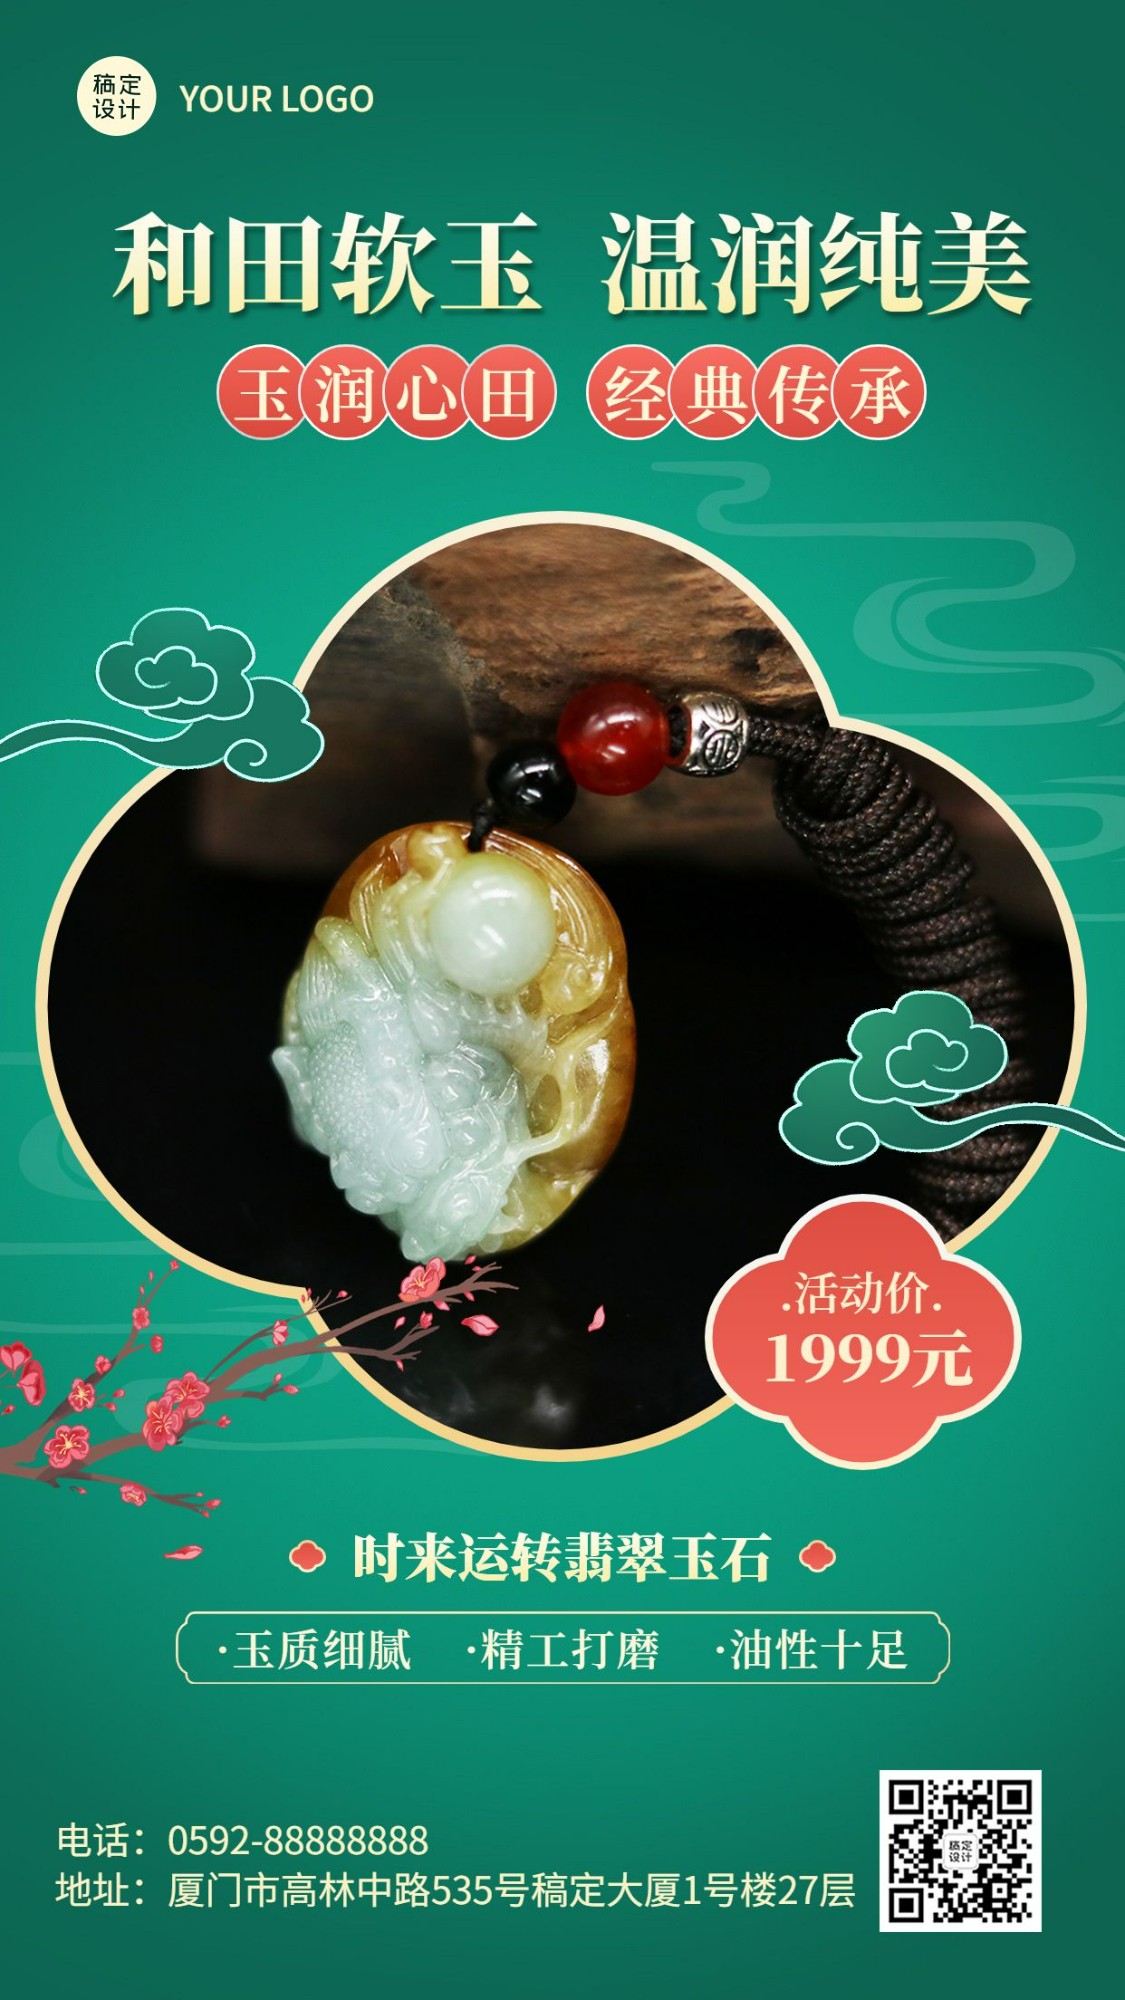 珠宝首饰和田玉产品展示营销中国风手机海报预览效果